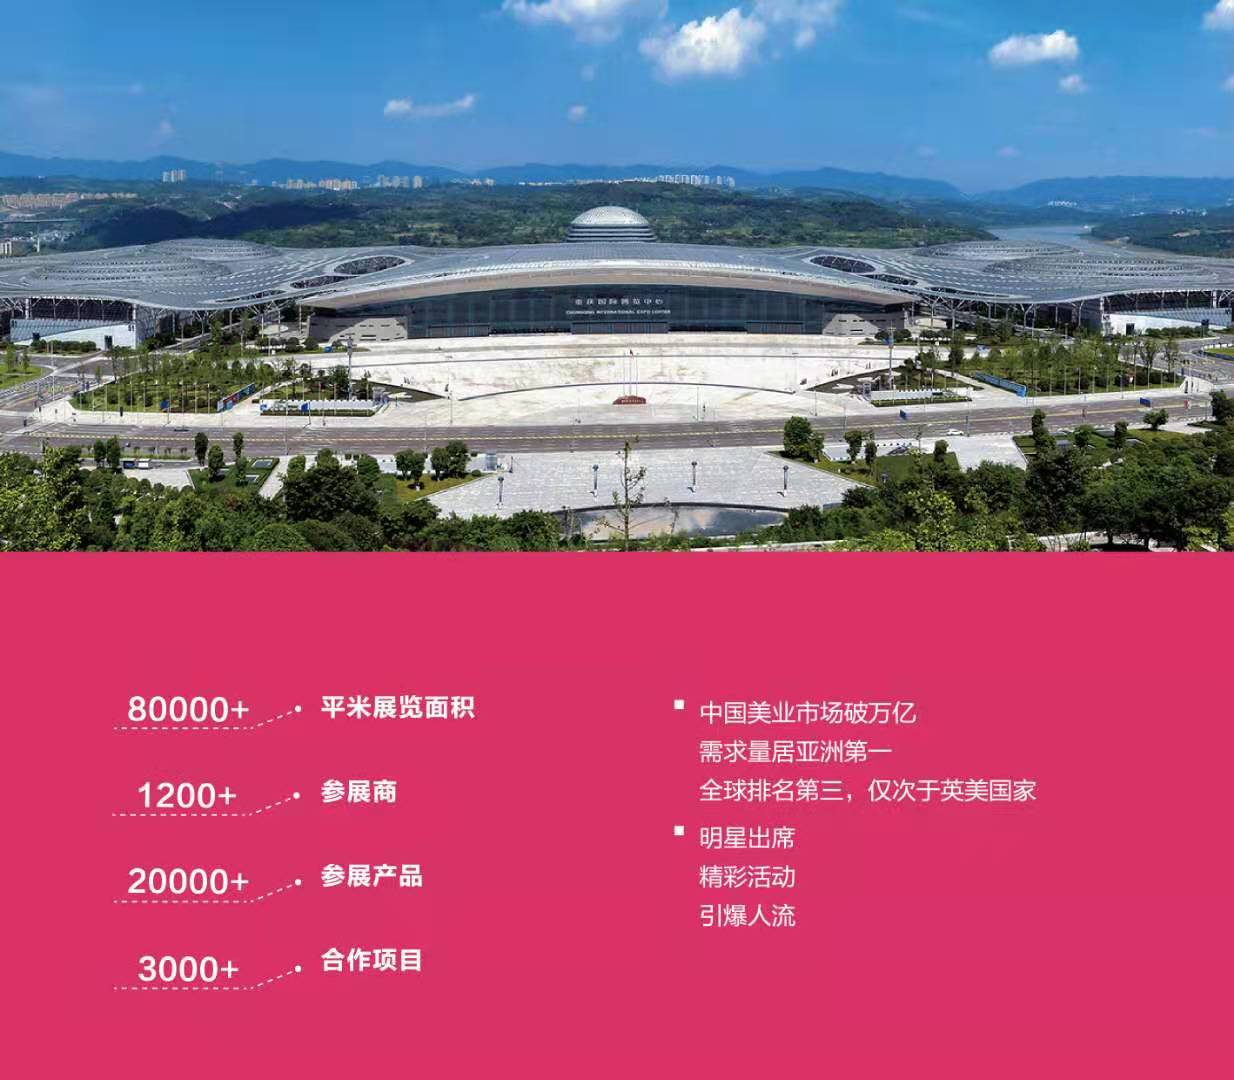 二十五届中国水泥技术及装备展览会